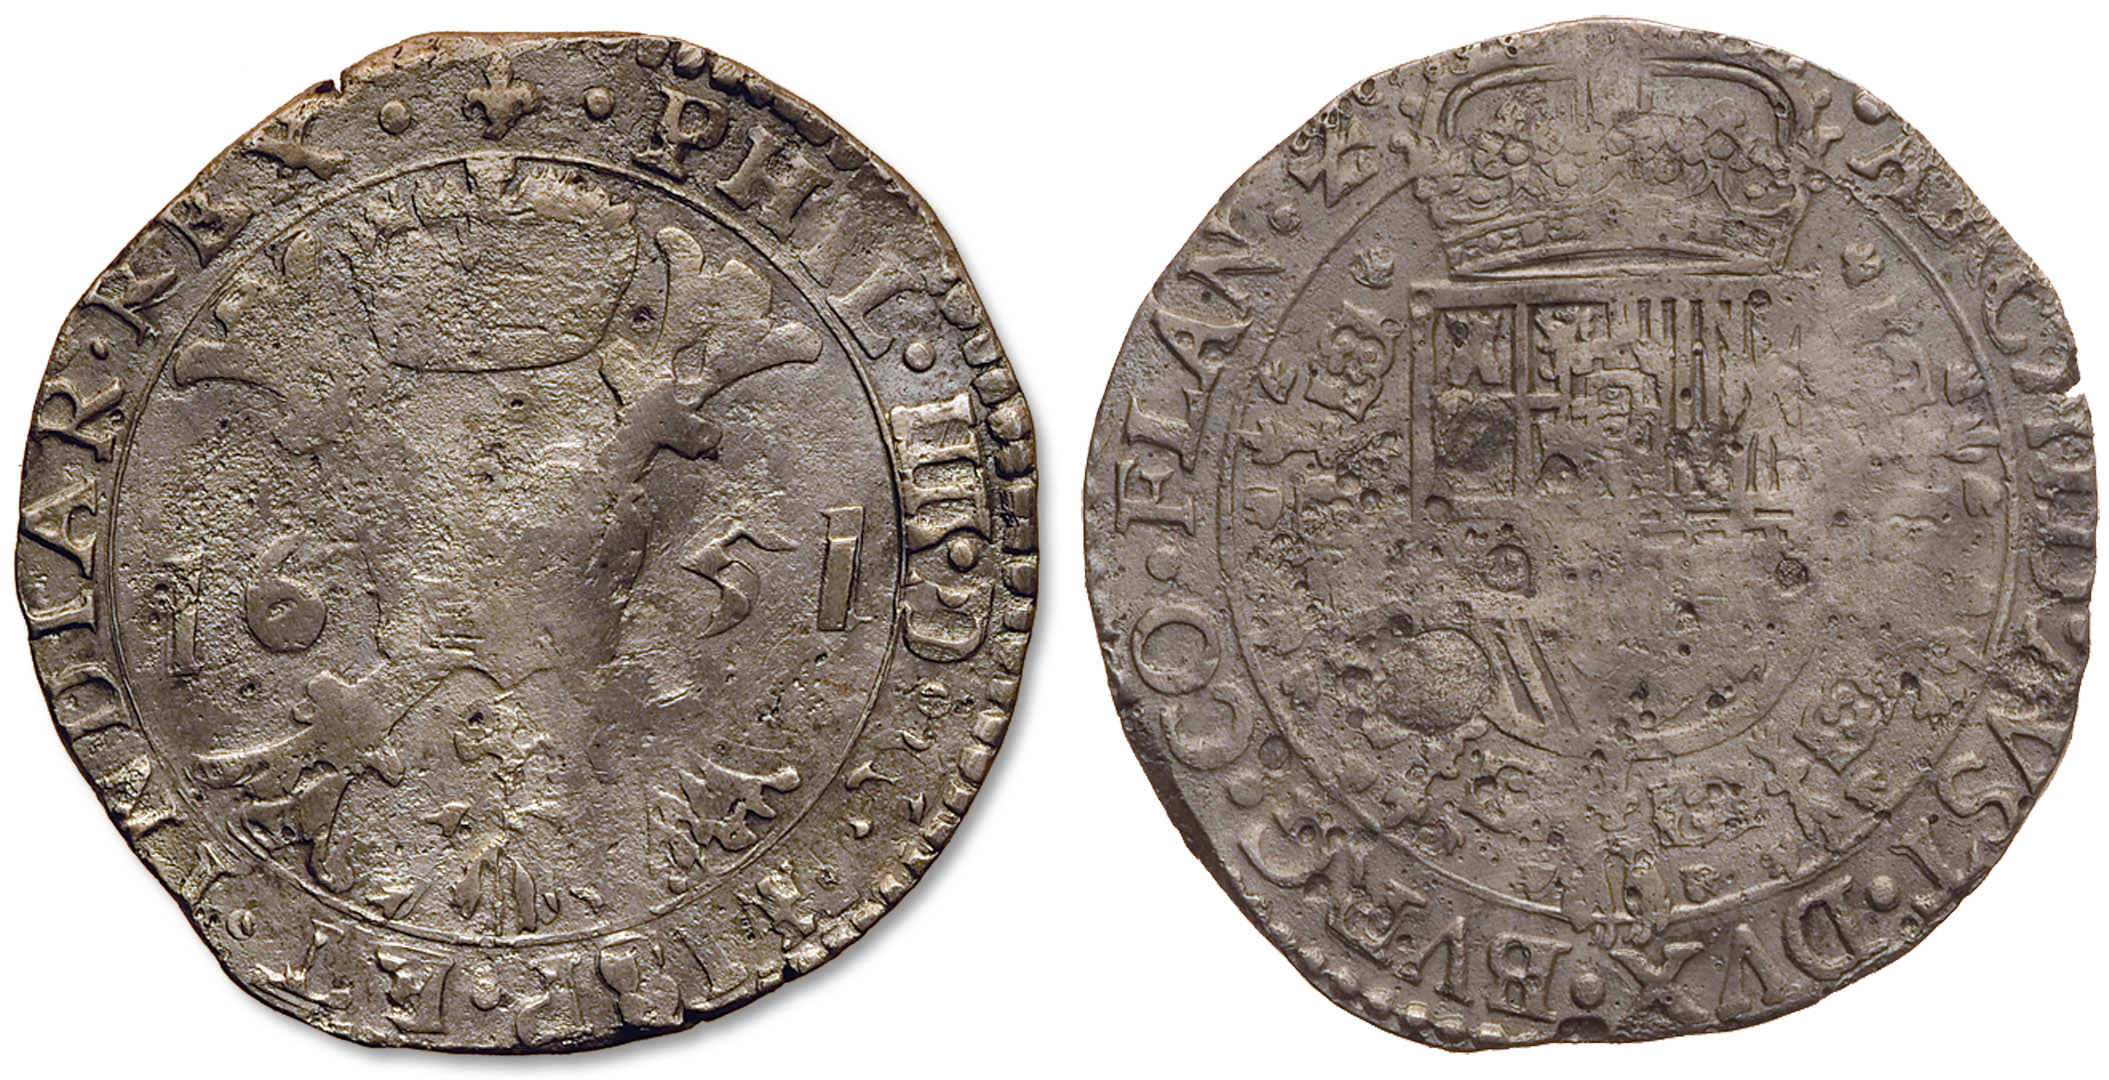 Ispanijos Nyderlandai. Flandrija. Pilypas IV. Patagonas. 1651 m. Sidabras. Ø 42,8 mm, Valdovų rūmai, Vilnius